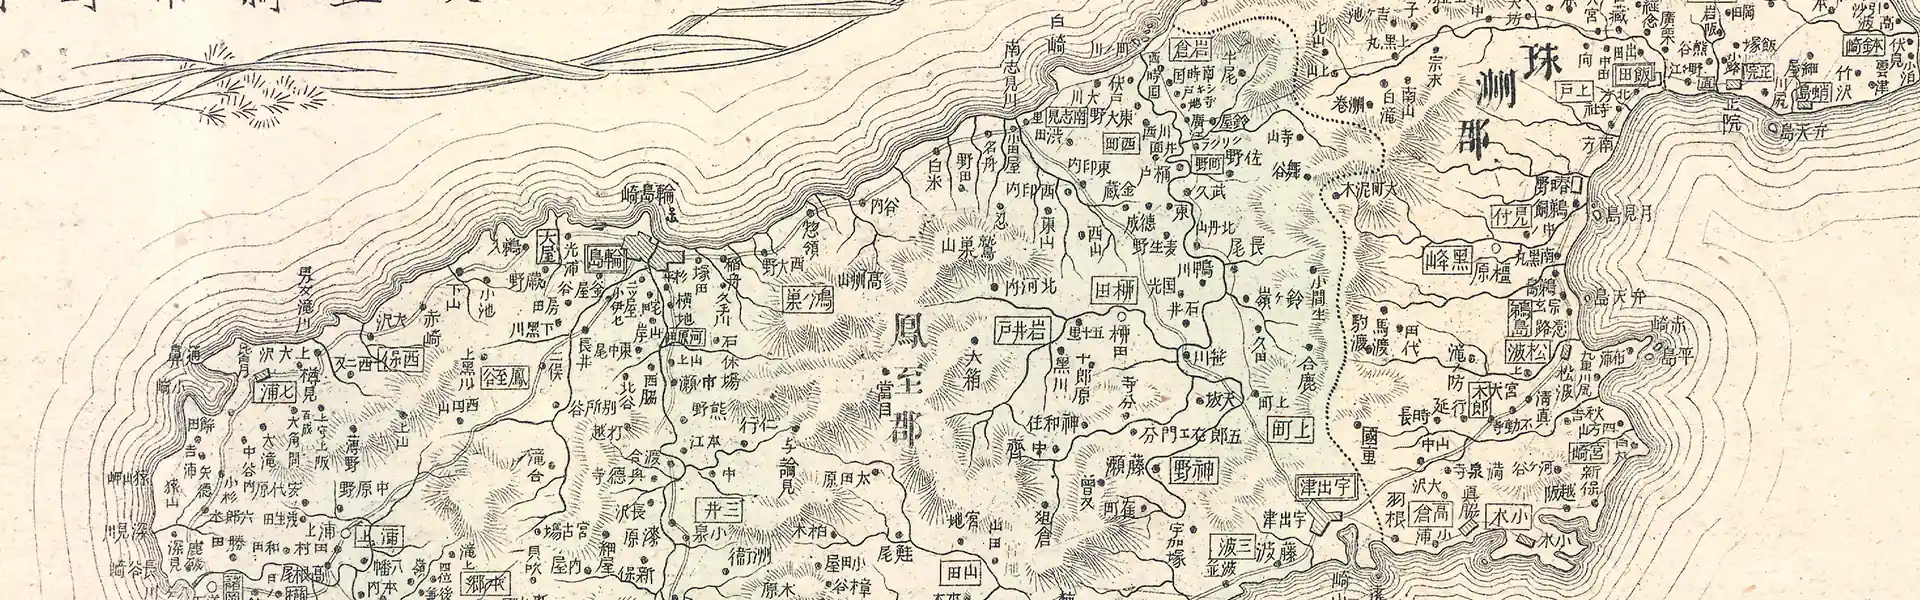 石川県管内全図 明治30年(1897) – 大日本管轄分地図